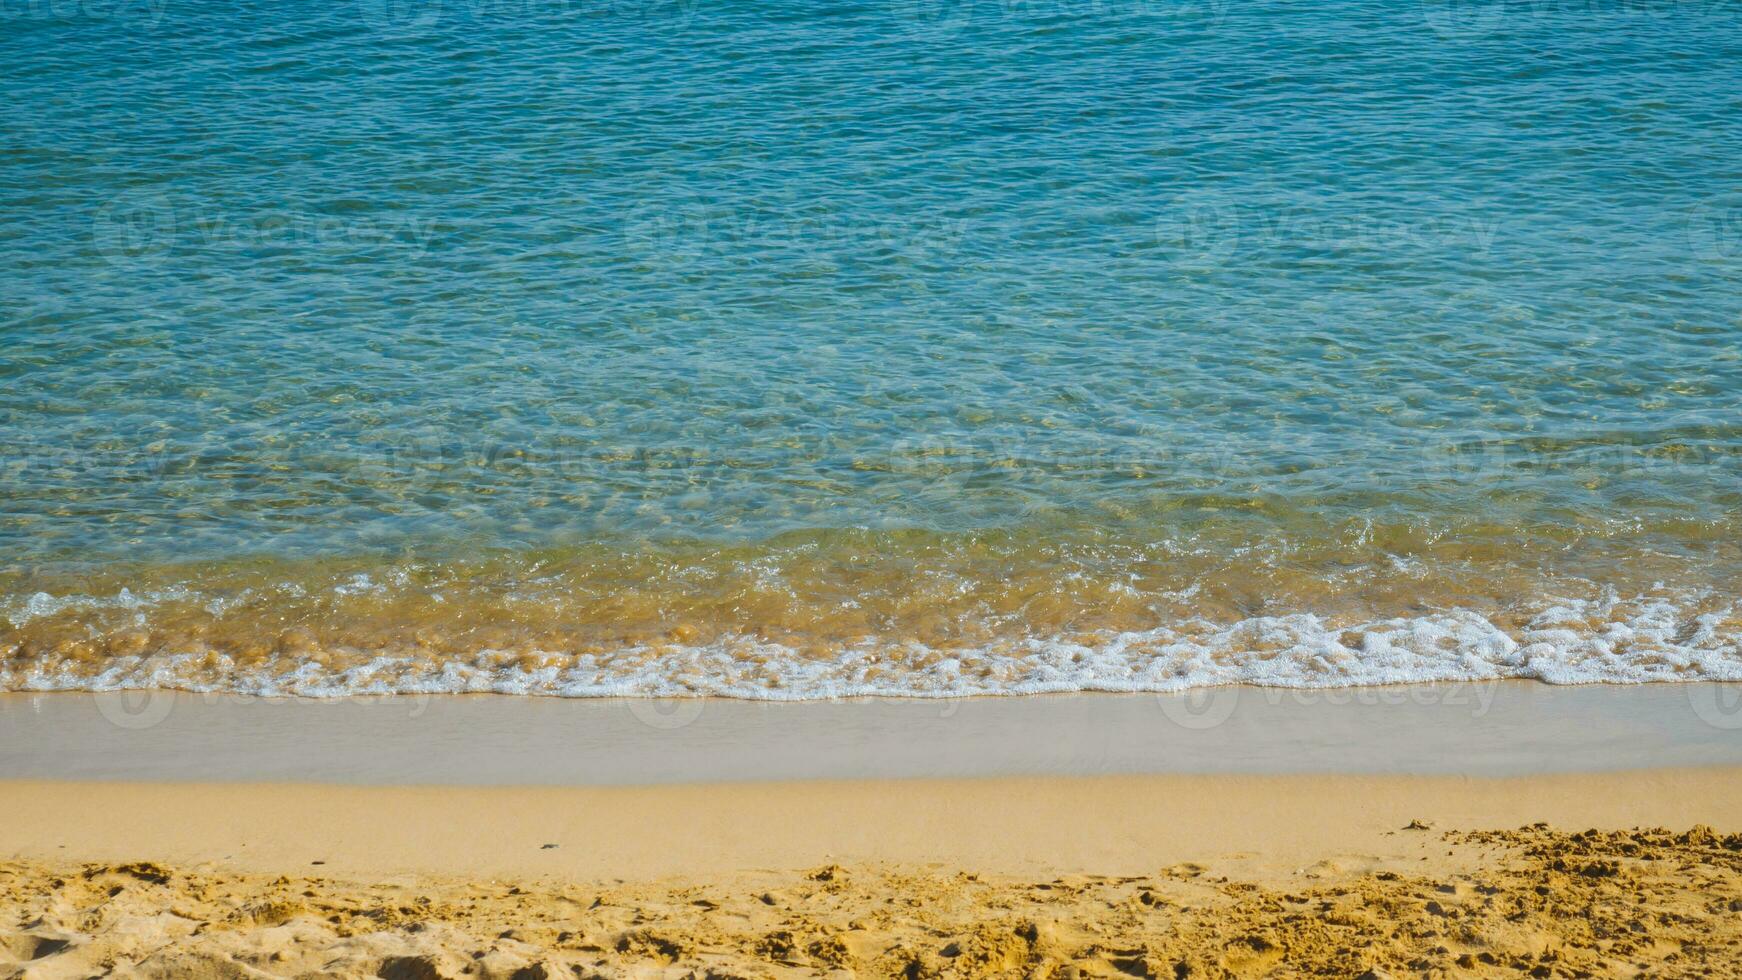 sandig strand med små vågor - blå hav och gul sand foto